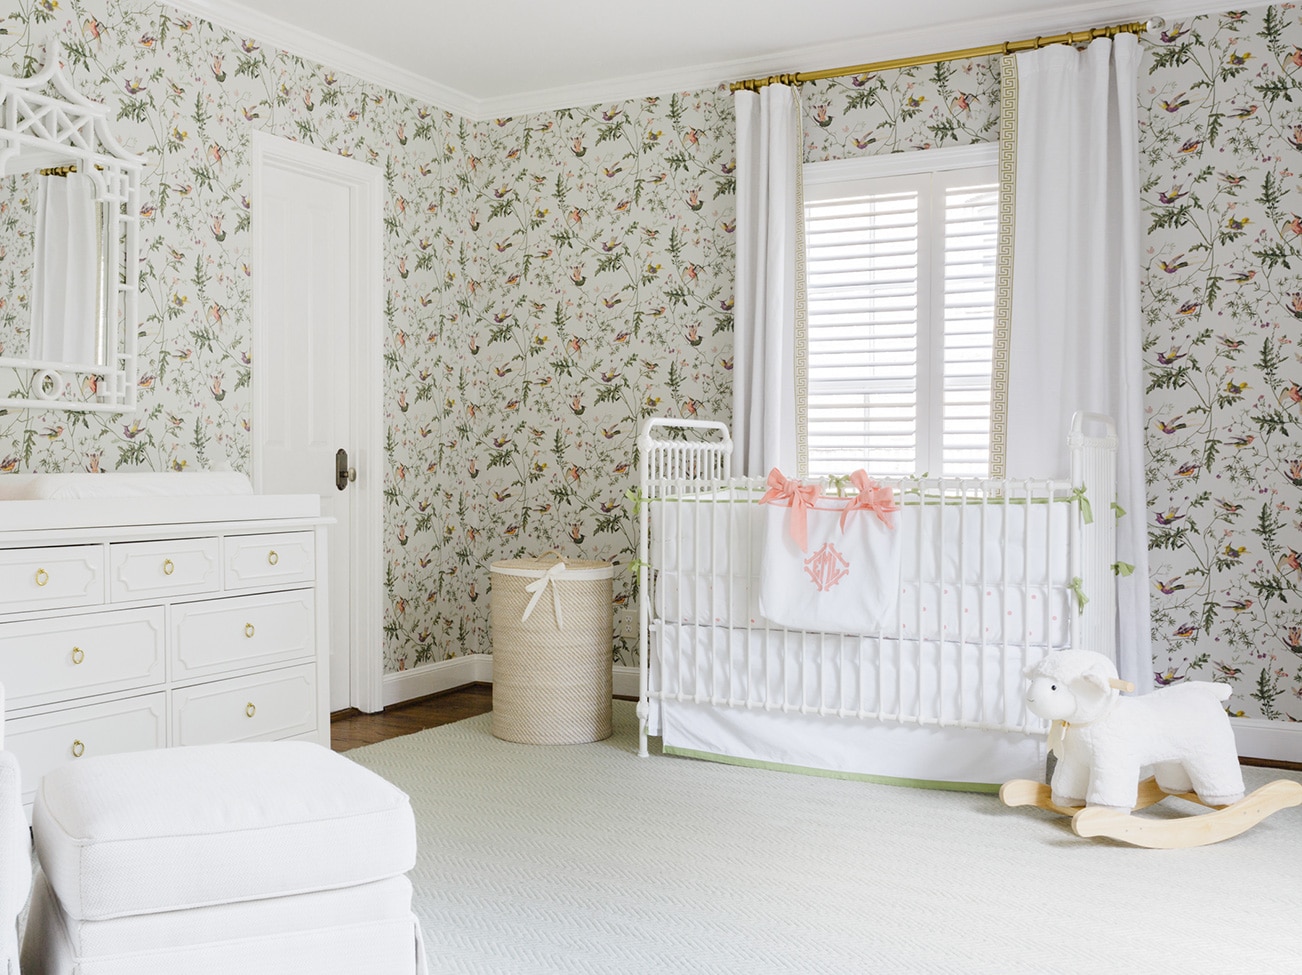 Joyeuse chambre d’enfant au papier peint fleuri avec rideaux blancs pleine longueur, lit de bébé blanc, commode, chaise et bascule pour bébé en peluche blanche.